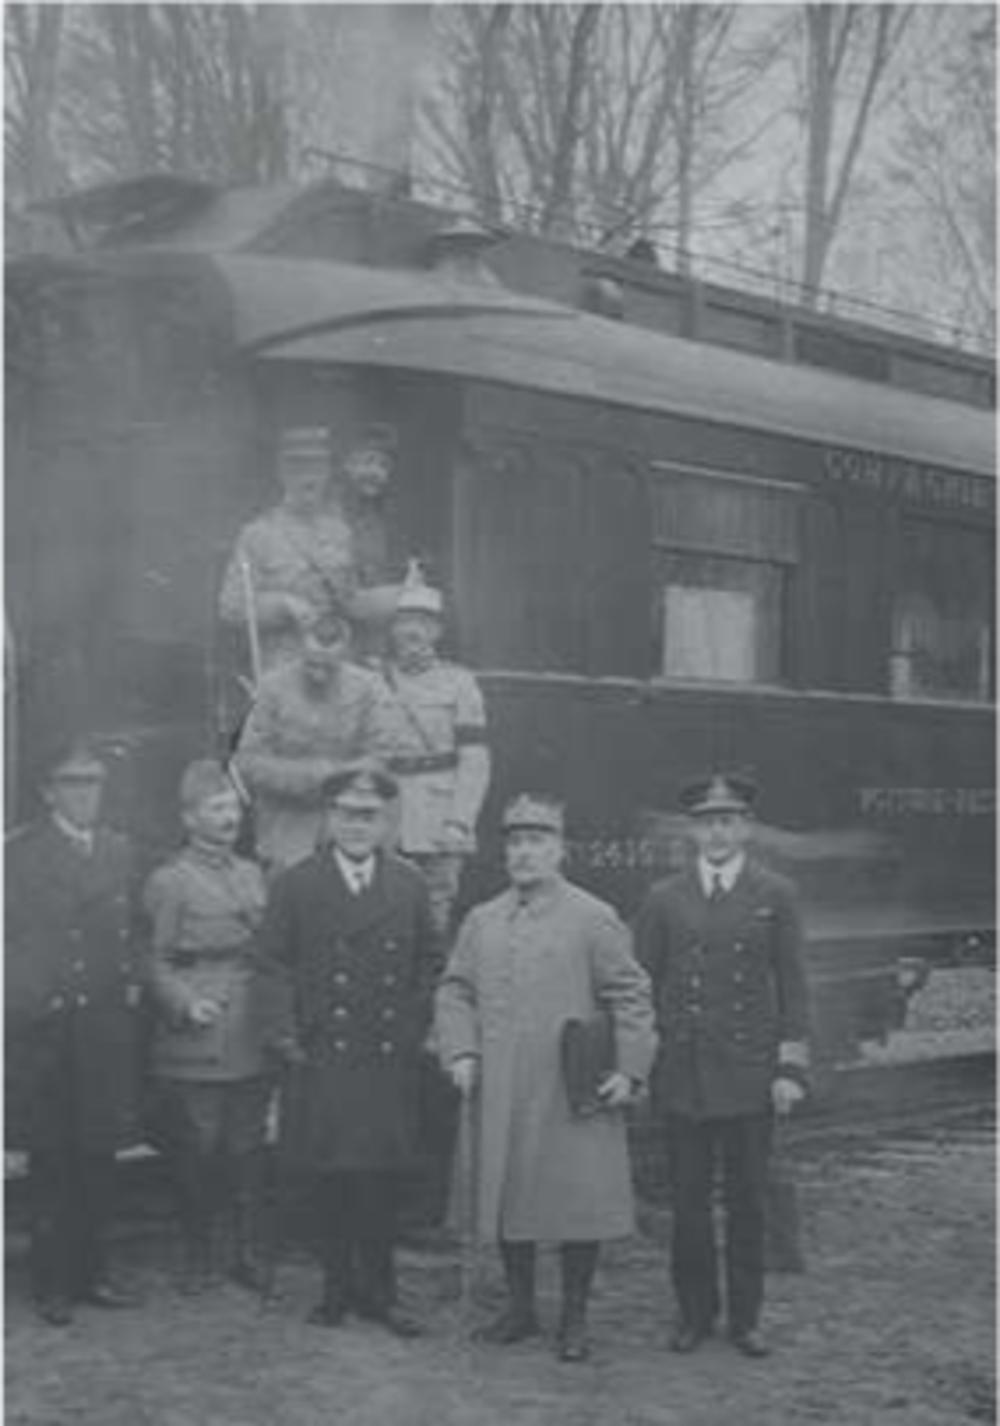 De delegaties voor de treinwagon in Compiègne. Tweede van rechts generaal Foch. Links van hem de Britse admiraal Wemyss, rechts schout-bijnacht Hope, tweede van links Maxime Weygand.